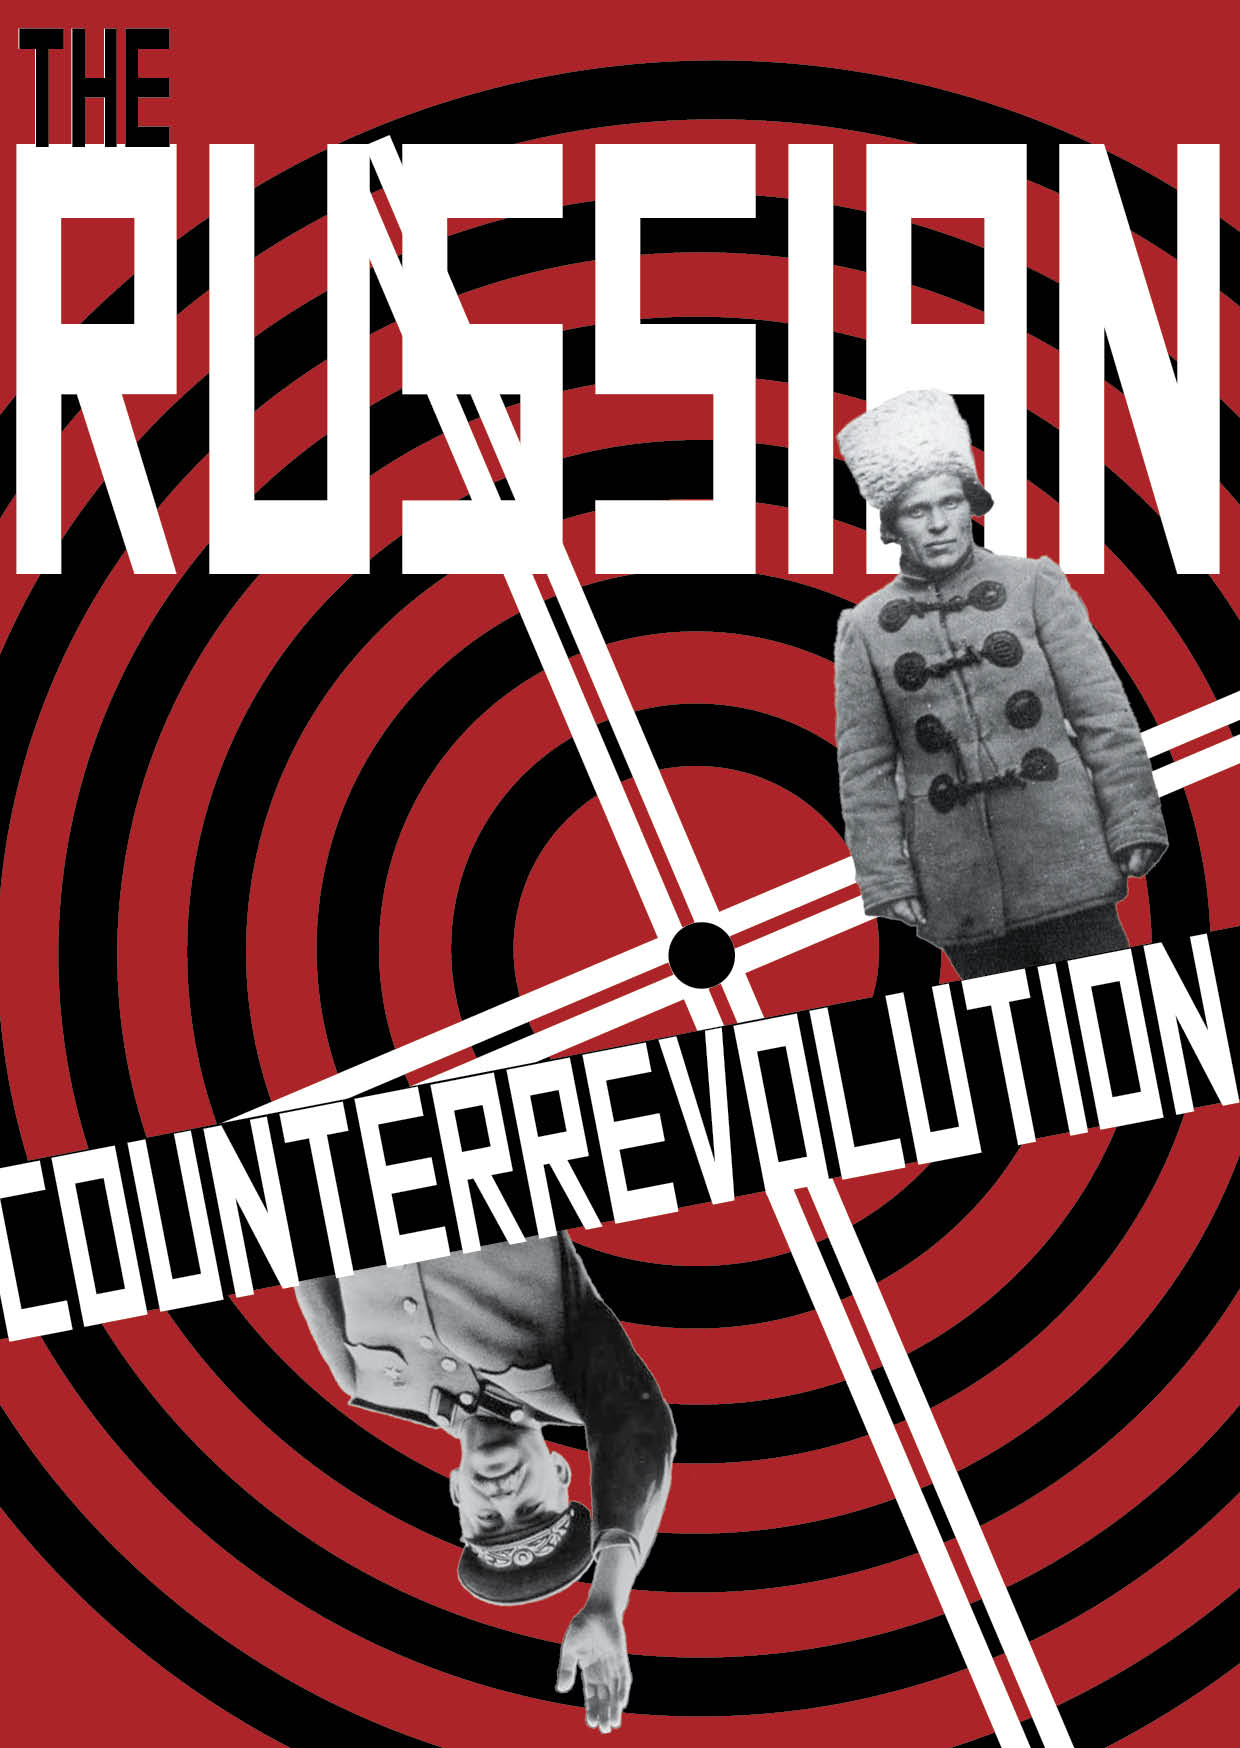 The Russian Counterrevolution